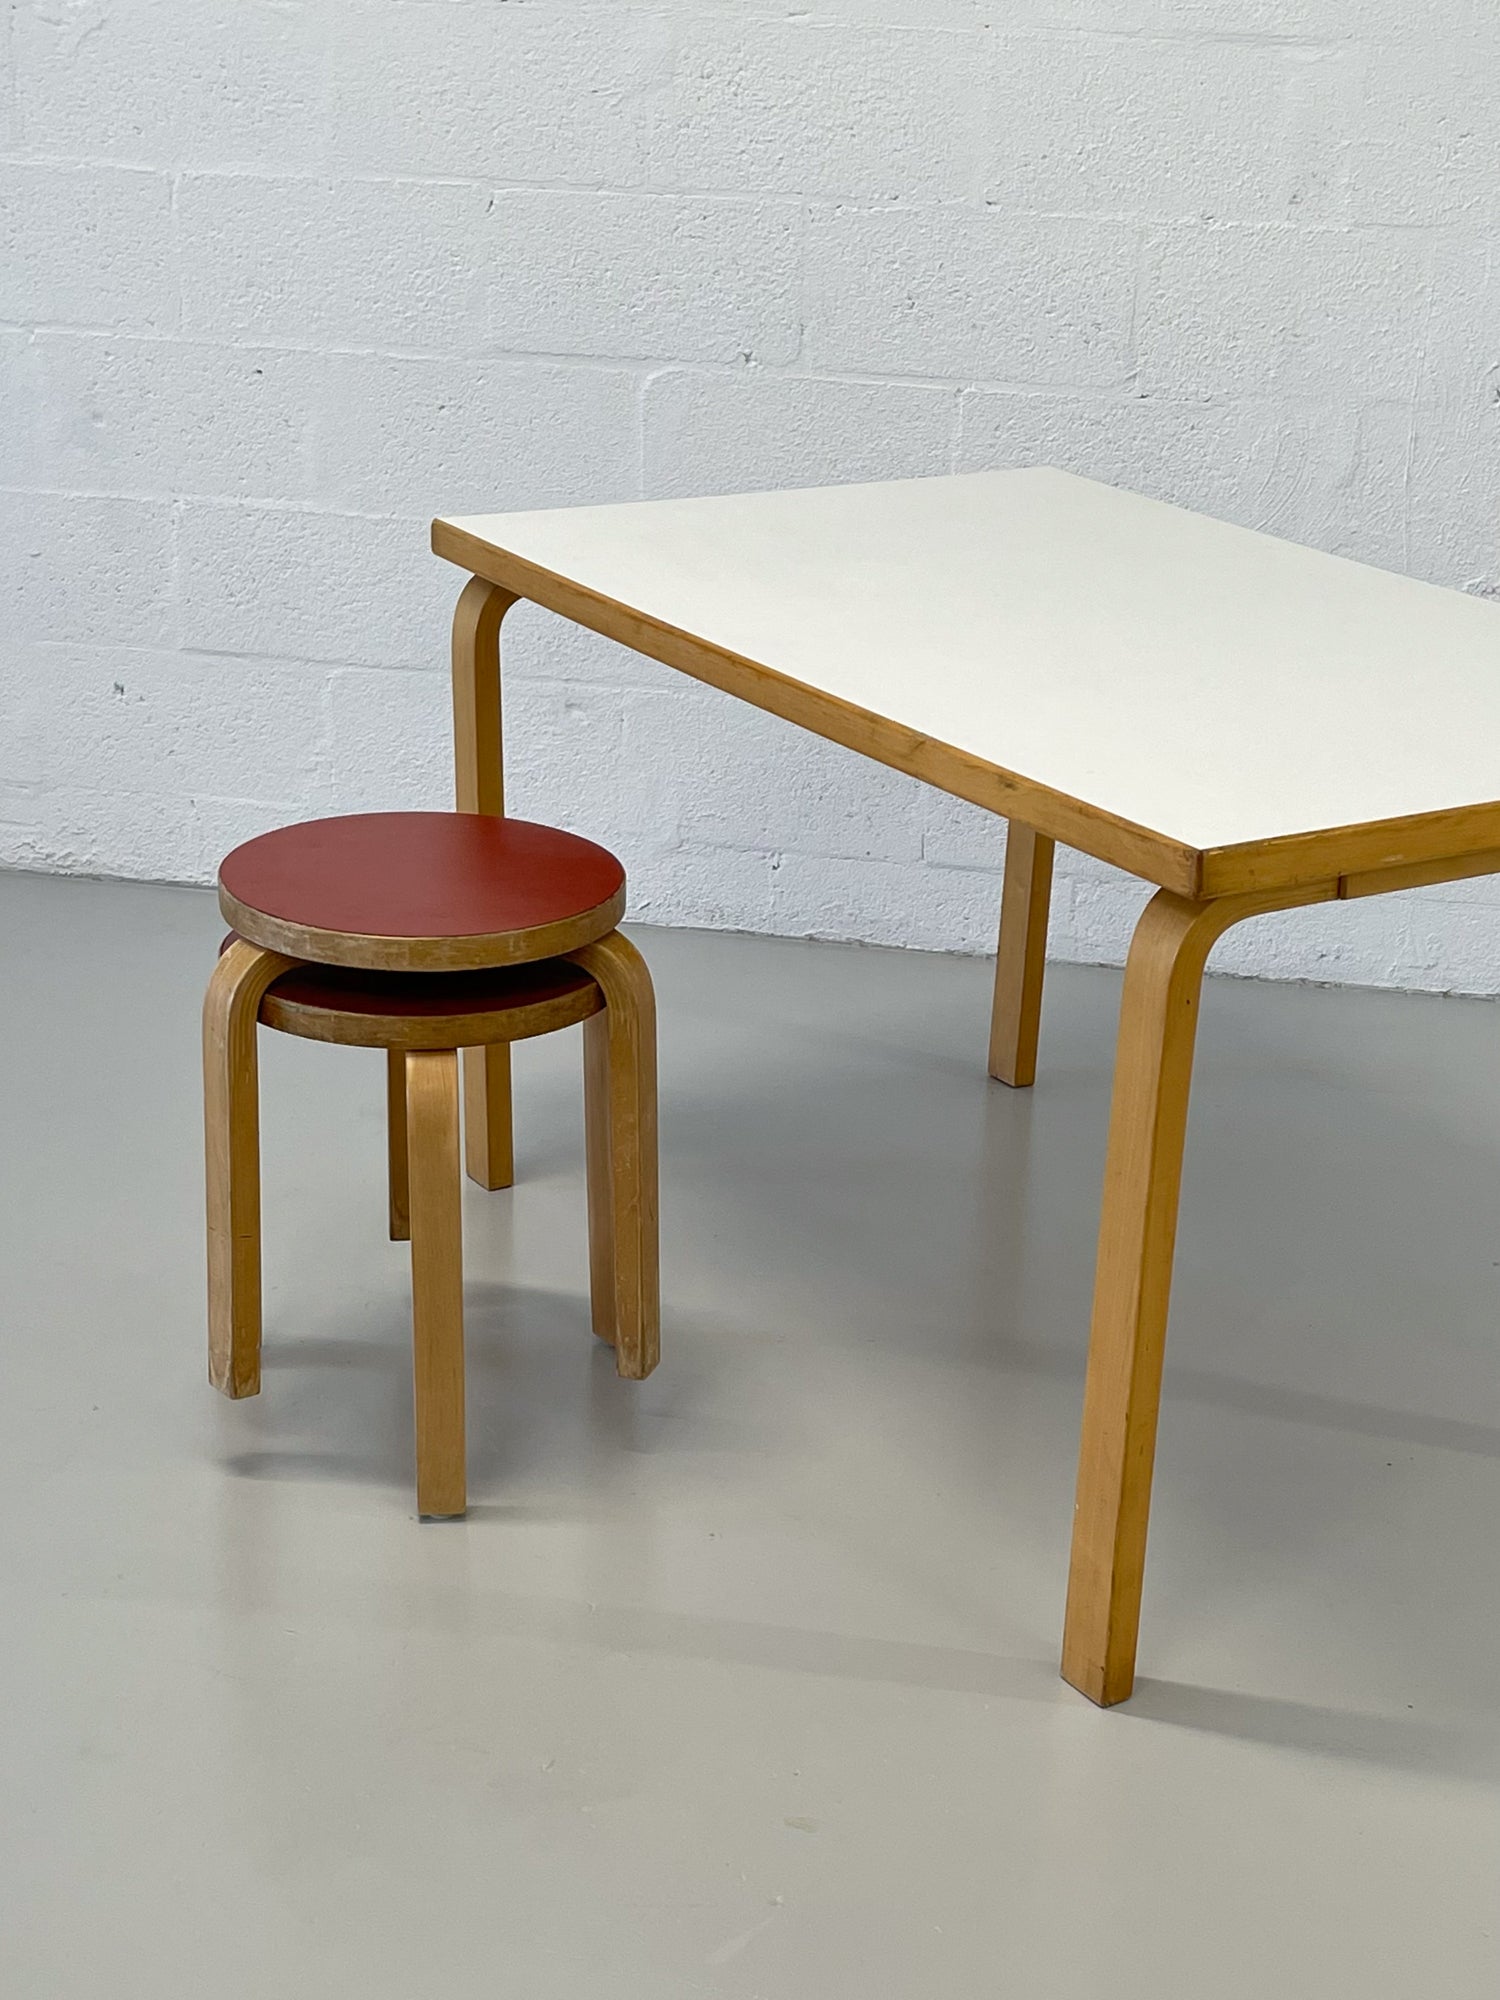 1970s Model 81B Dining Table by Alvar Aalto for Artek